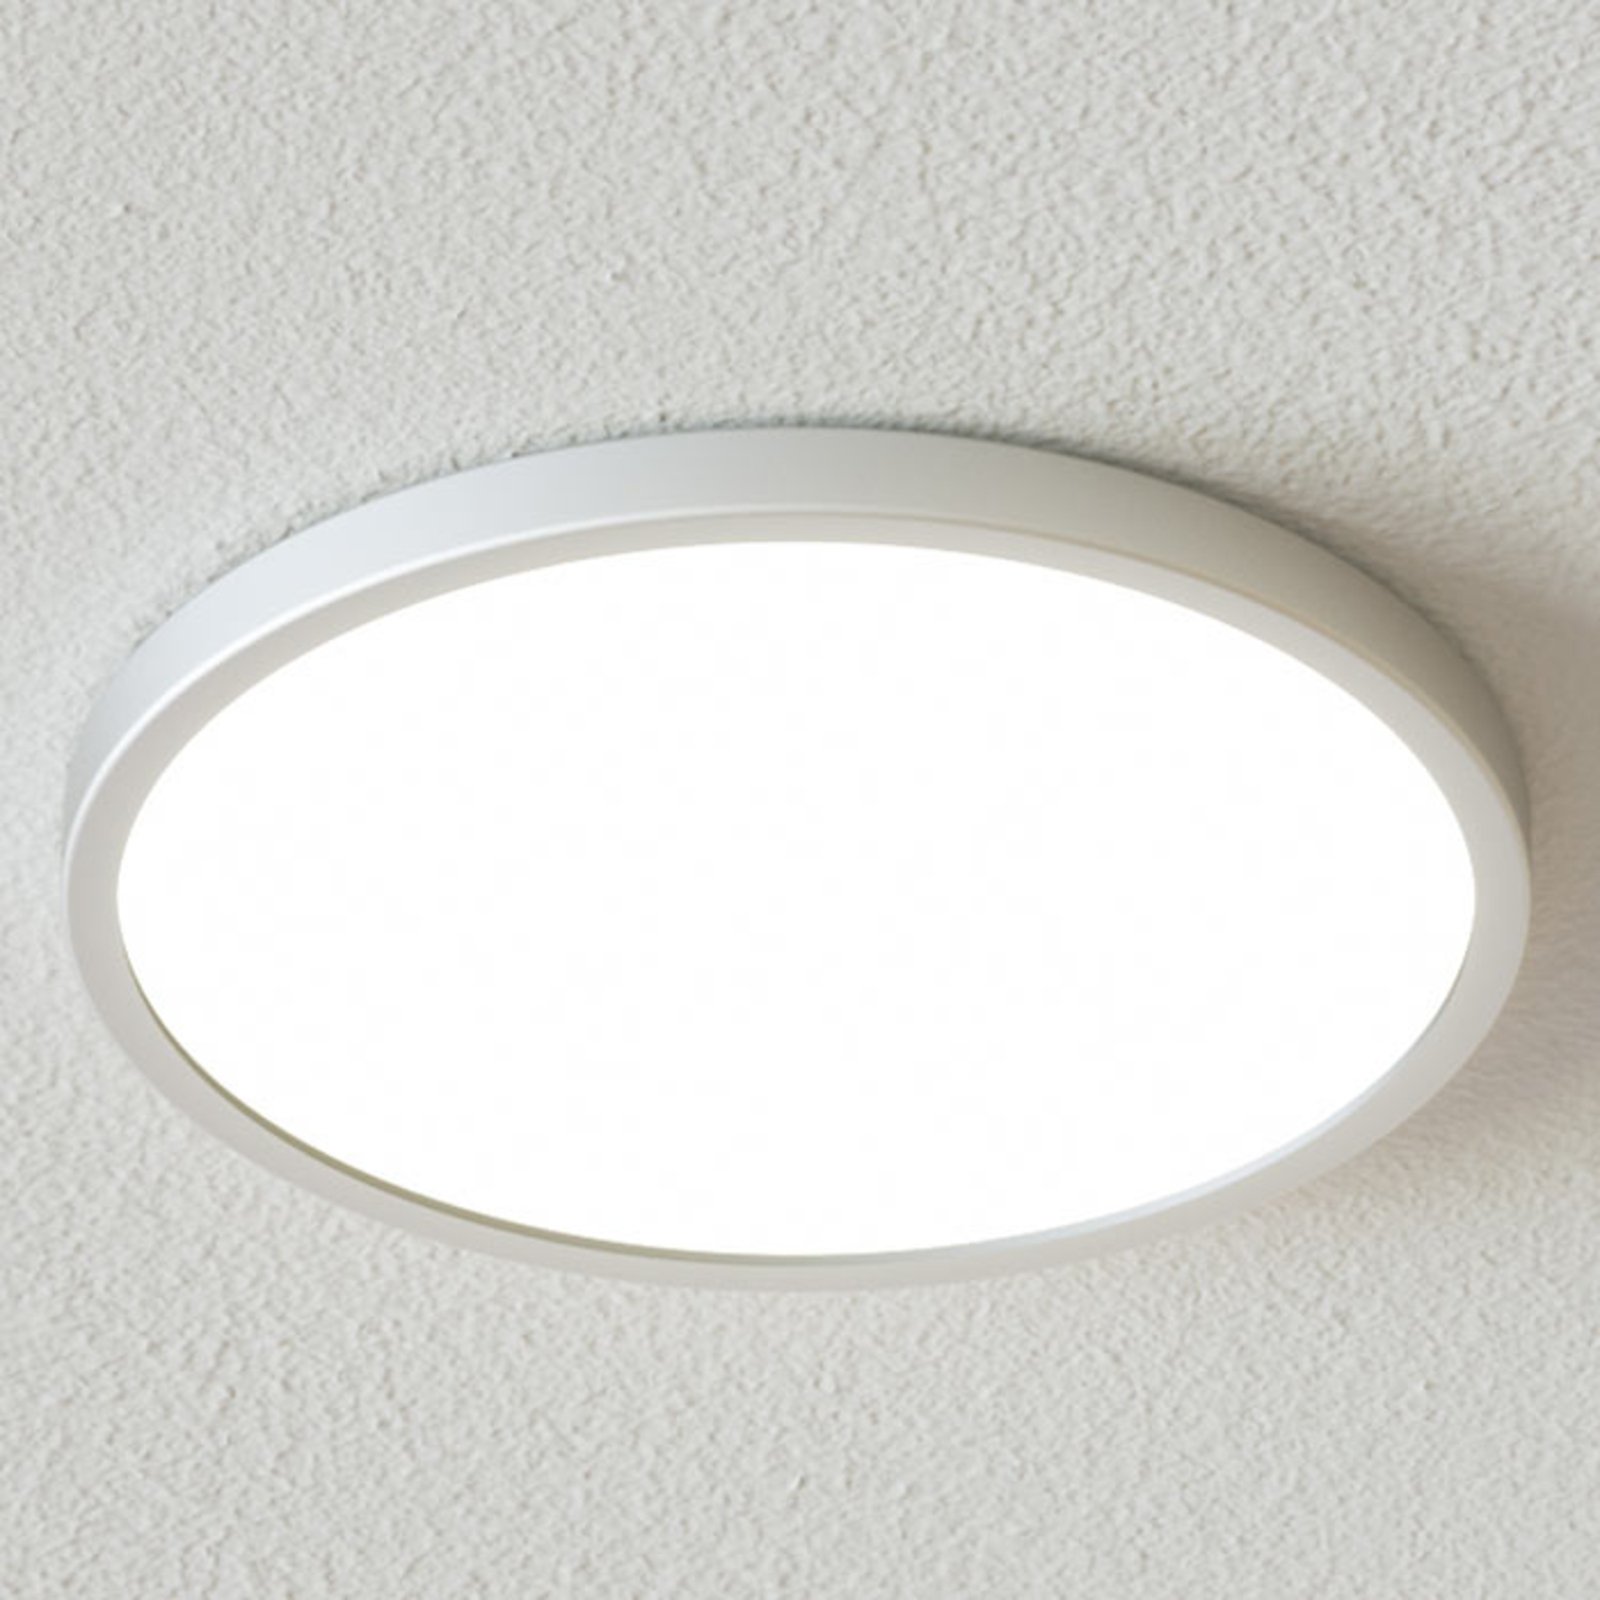 Solvie LED ceiling light, silver, round, Ø 30 cm